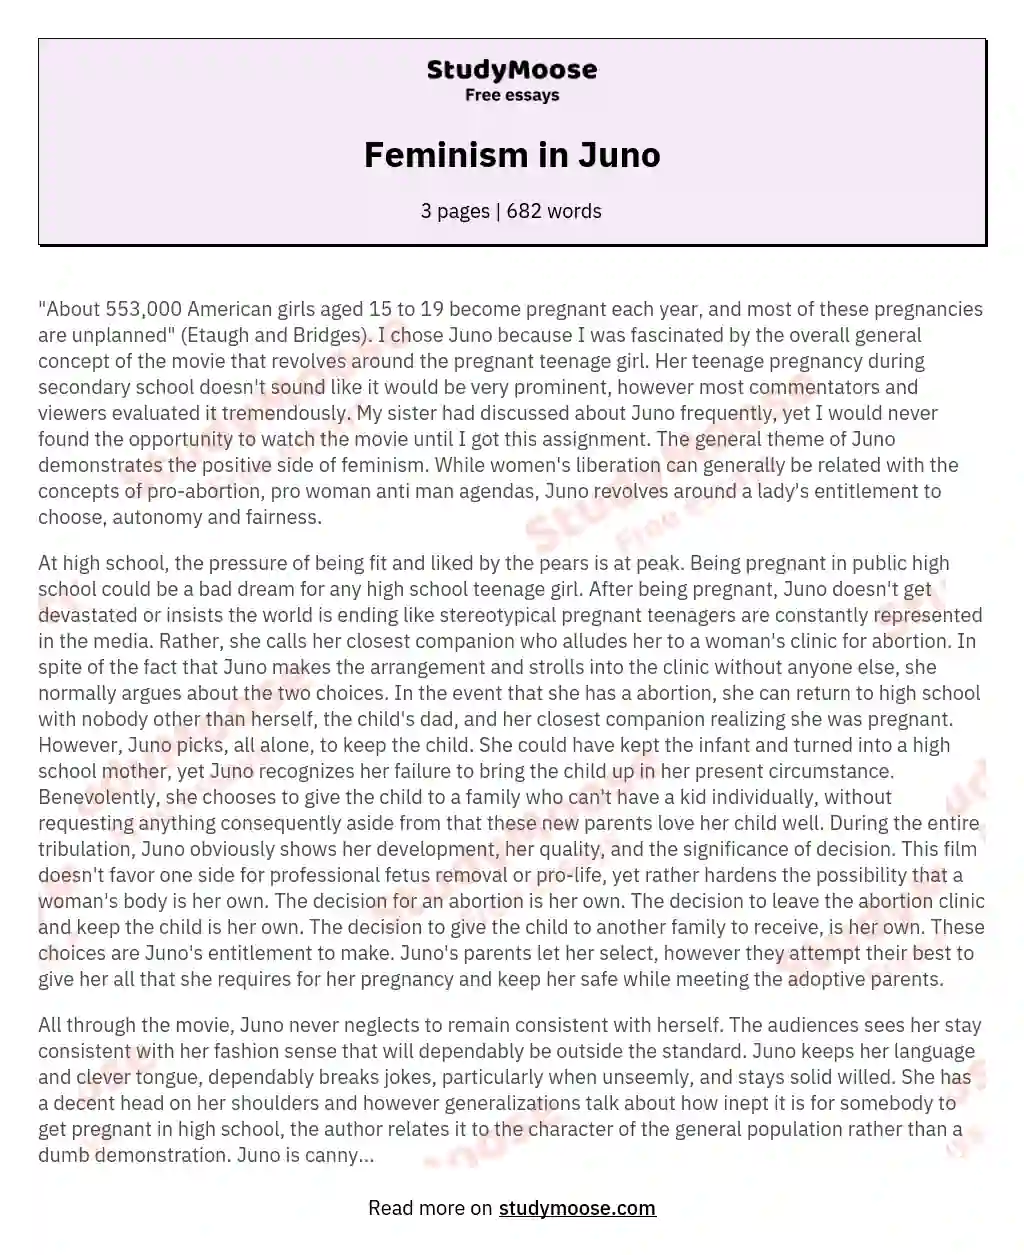 Feminism in Juno